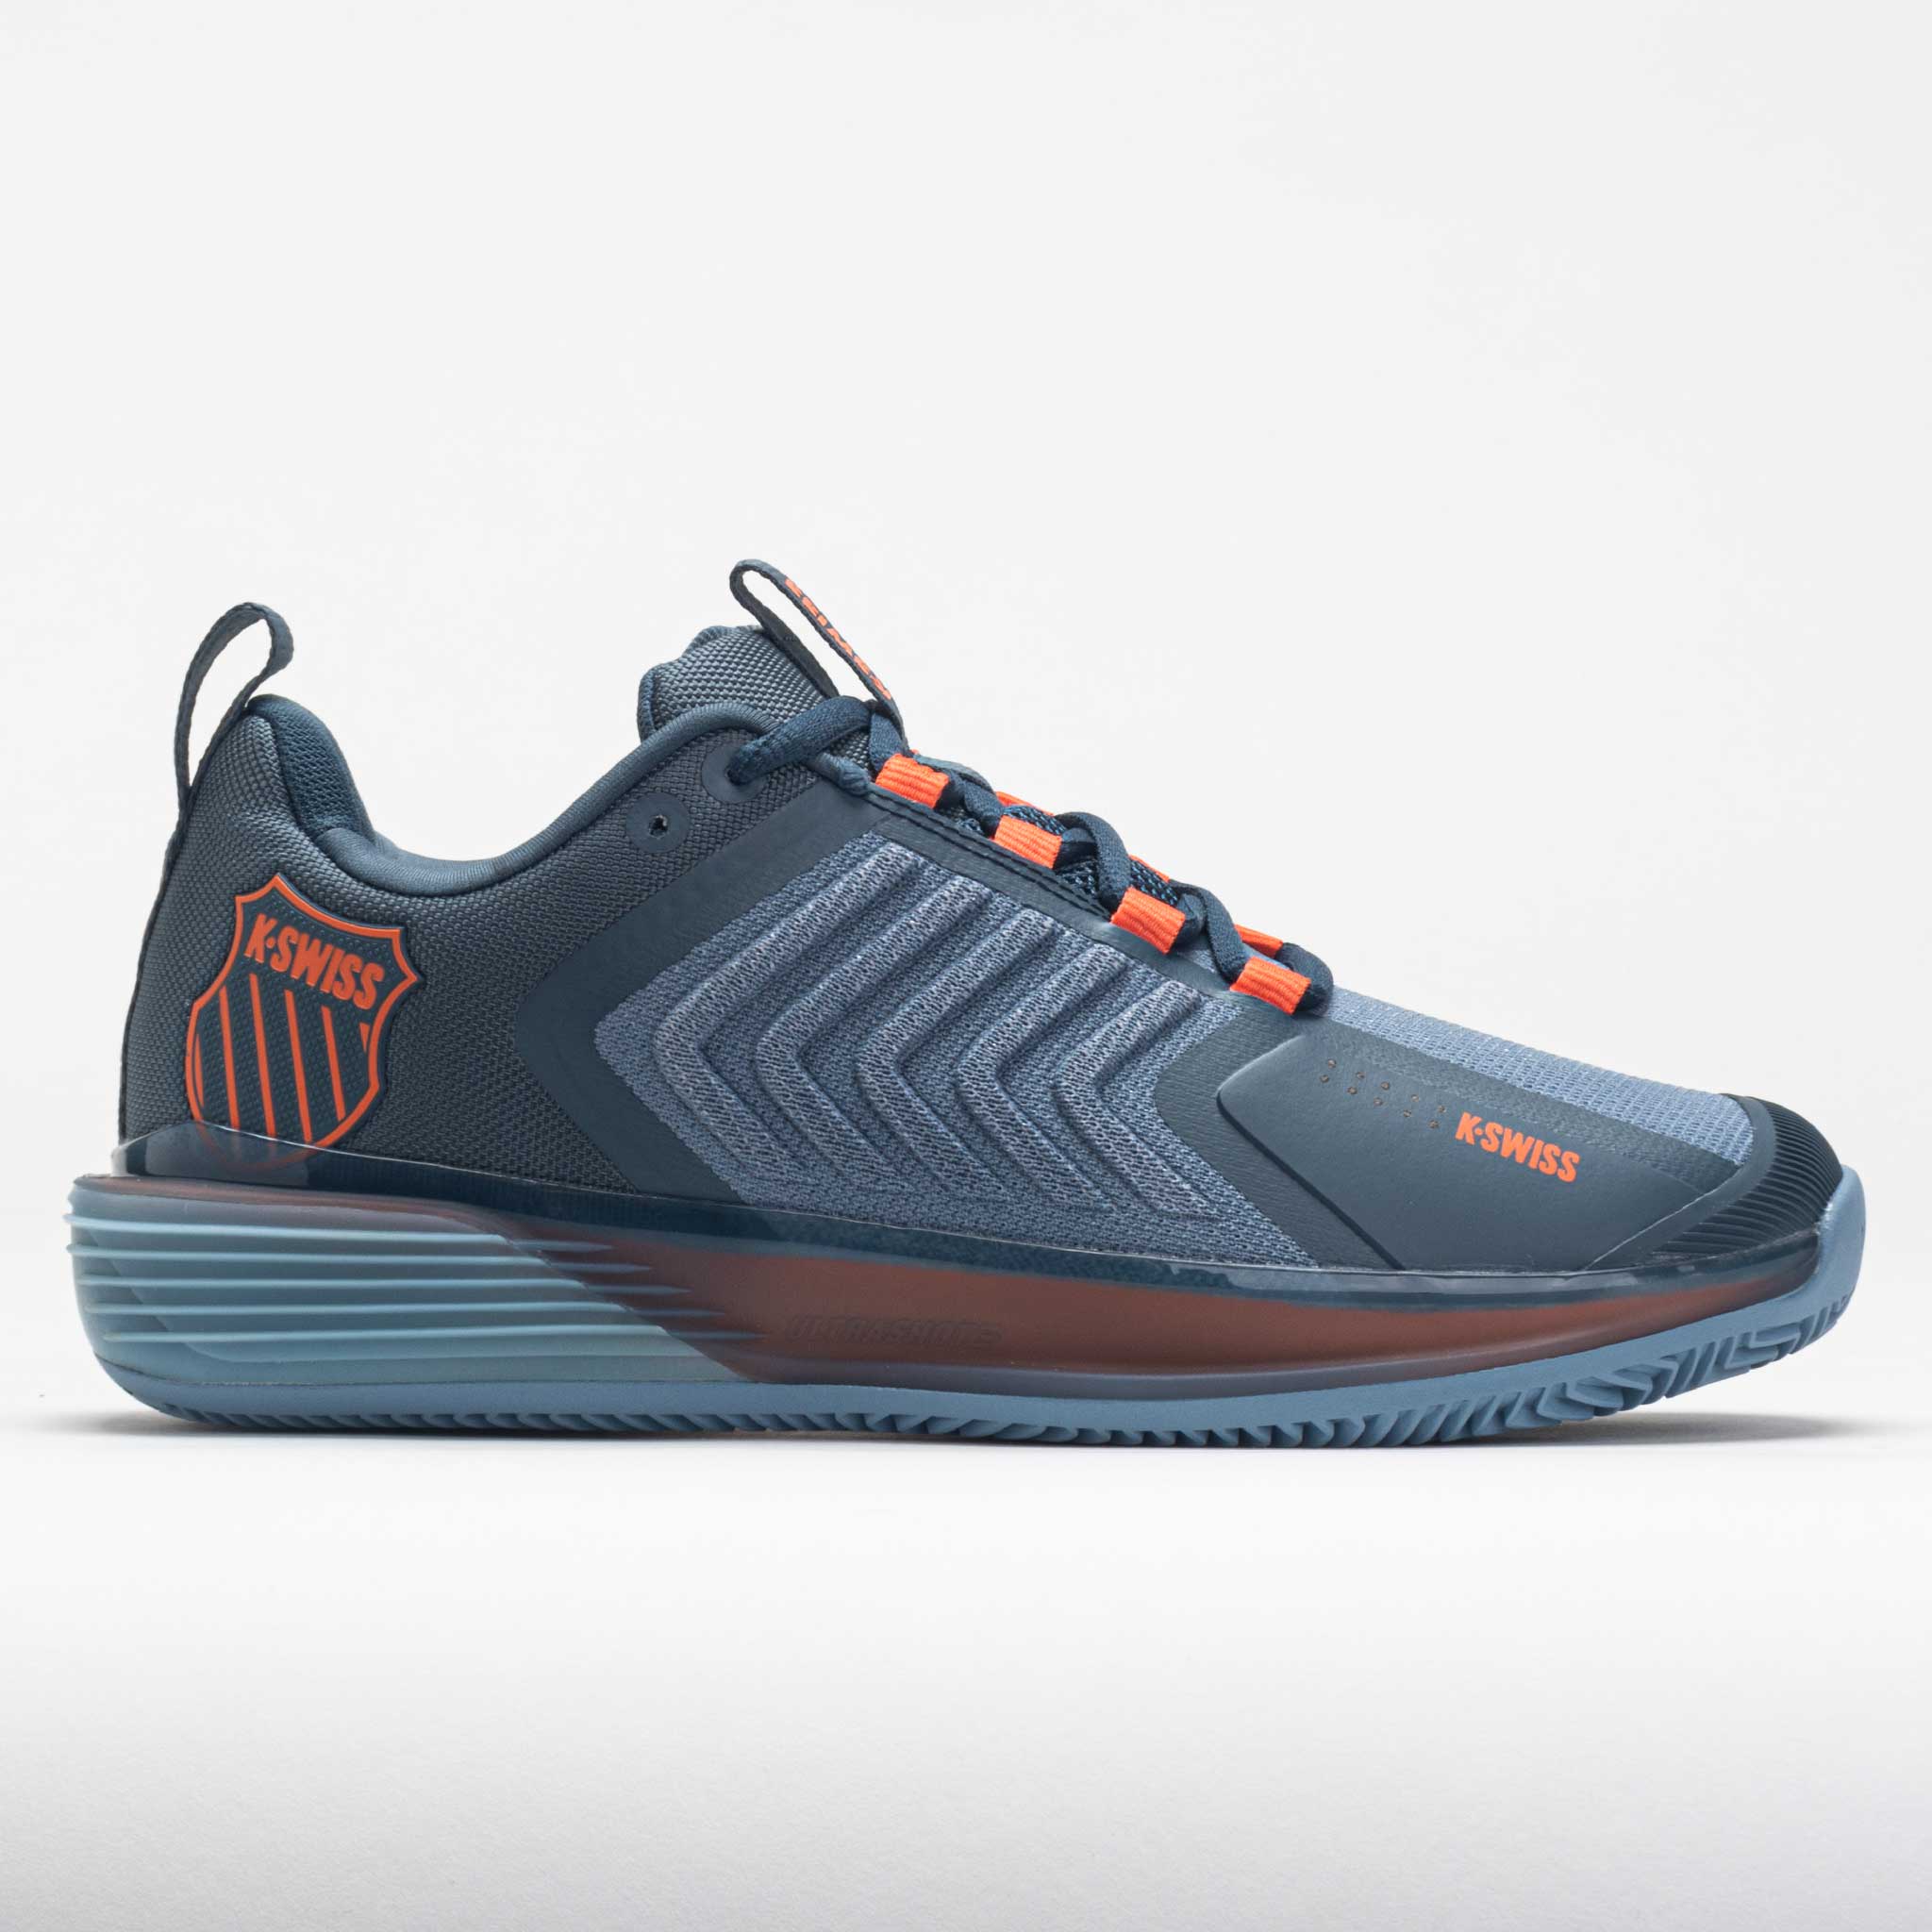 K-Swiss Ultrashot 3 Clay Men's Tennis Shoes Orion Blue/Windward Blue/Scarlet Ibis Size 13 Width D - Medium